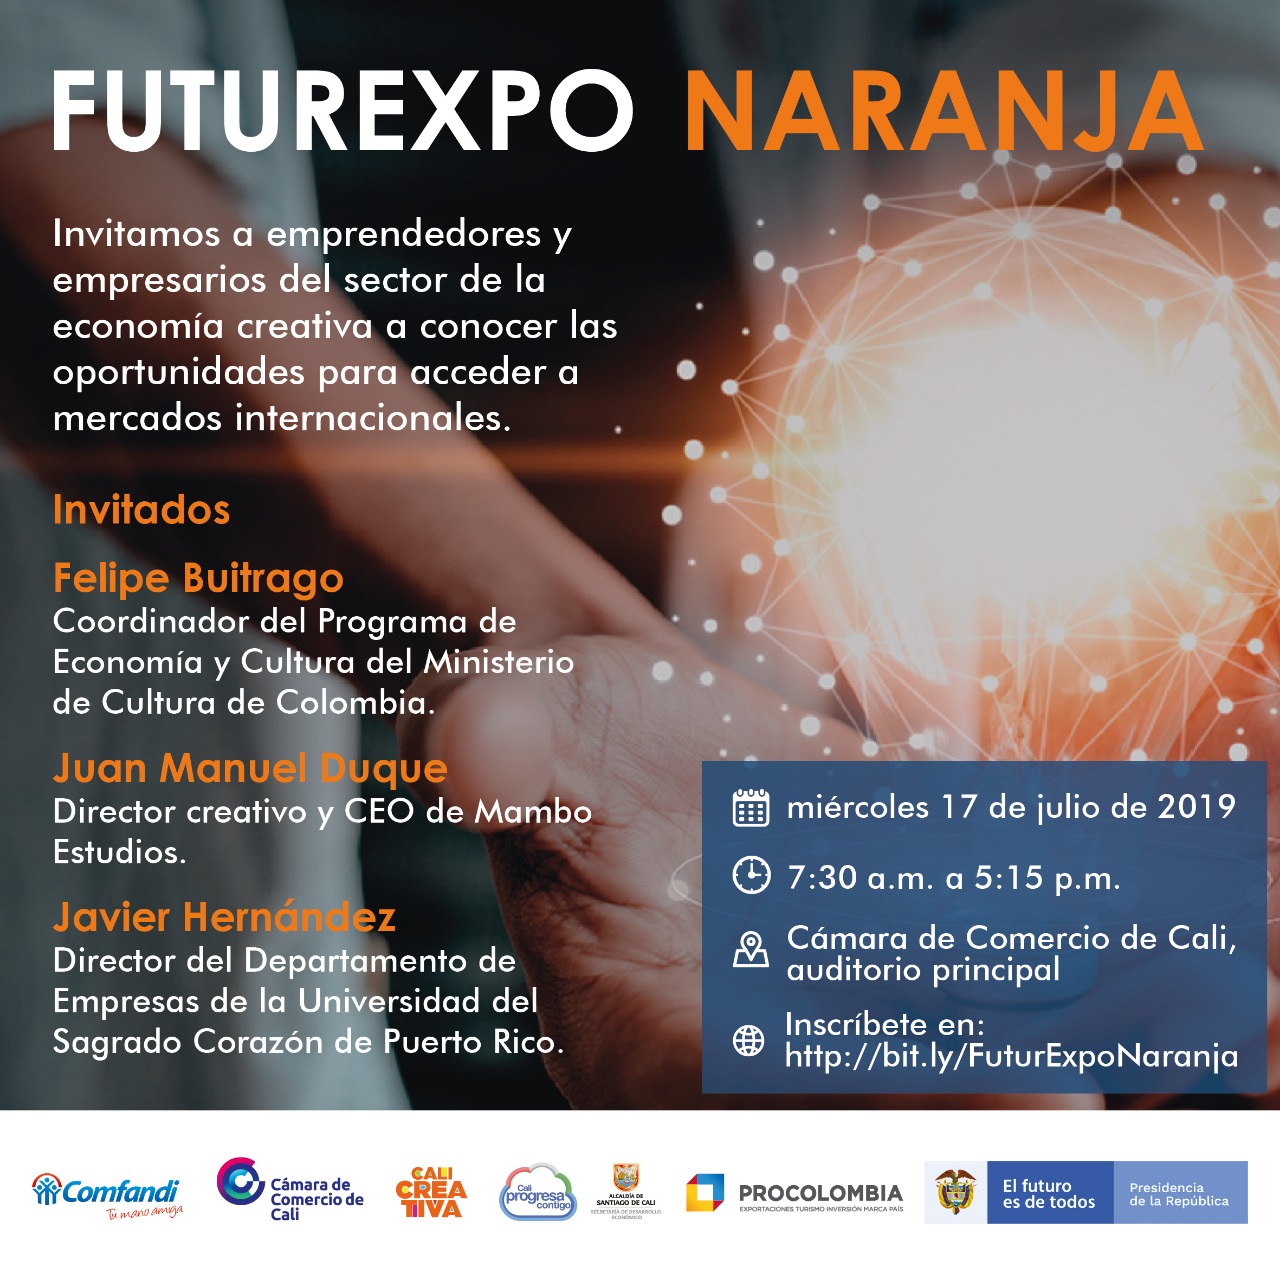 FuturExpo Naranja, un encuentro para emprendedores creativos